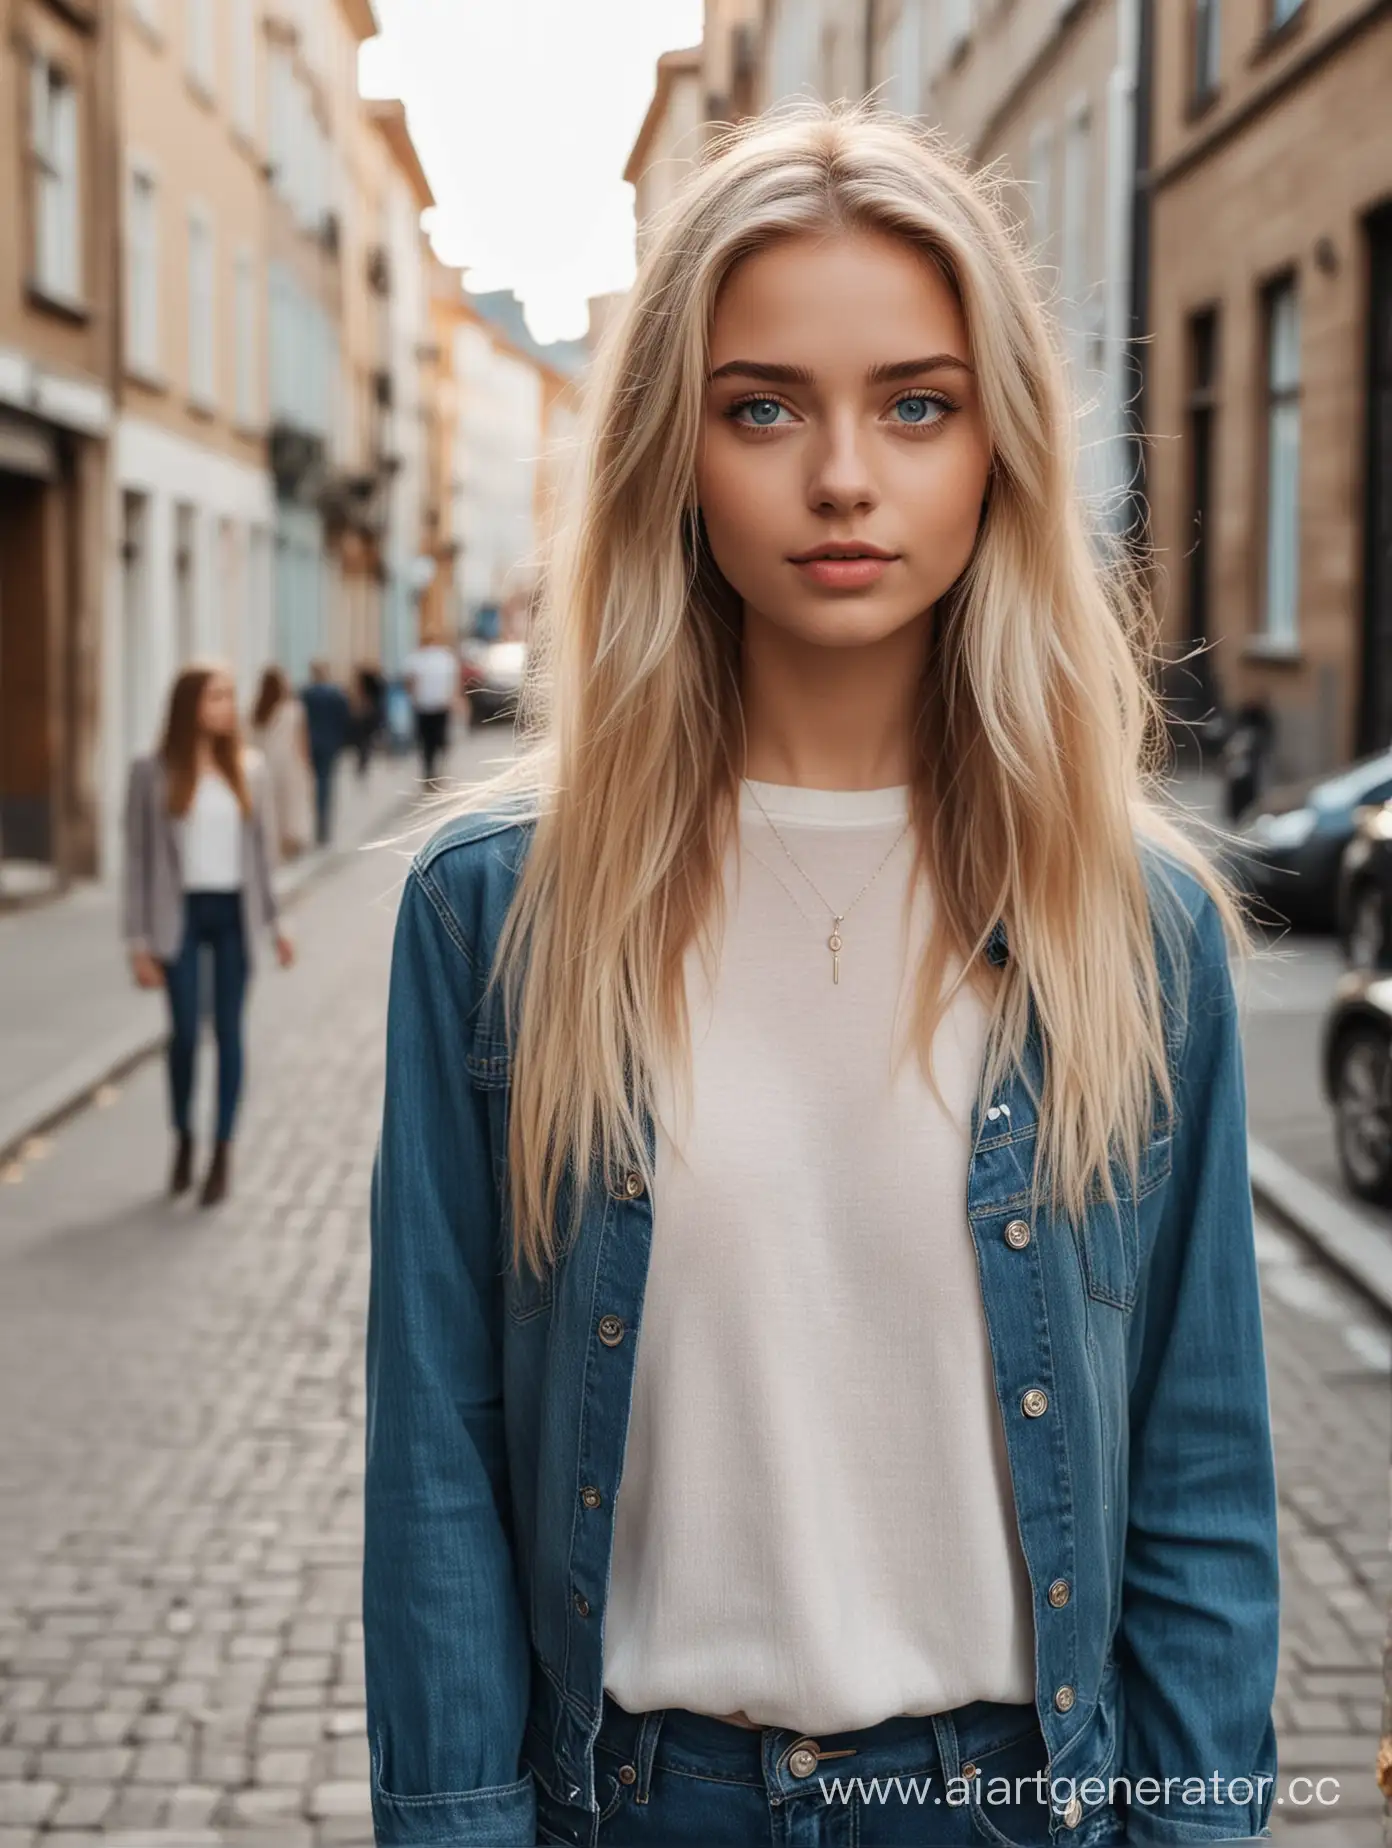 Сгенерировать девушку лет 20 высокого в полный рост светлые волосы голубые глаза стоит на фоне красивые улицы стильно одета рядом стоят ее друзья